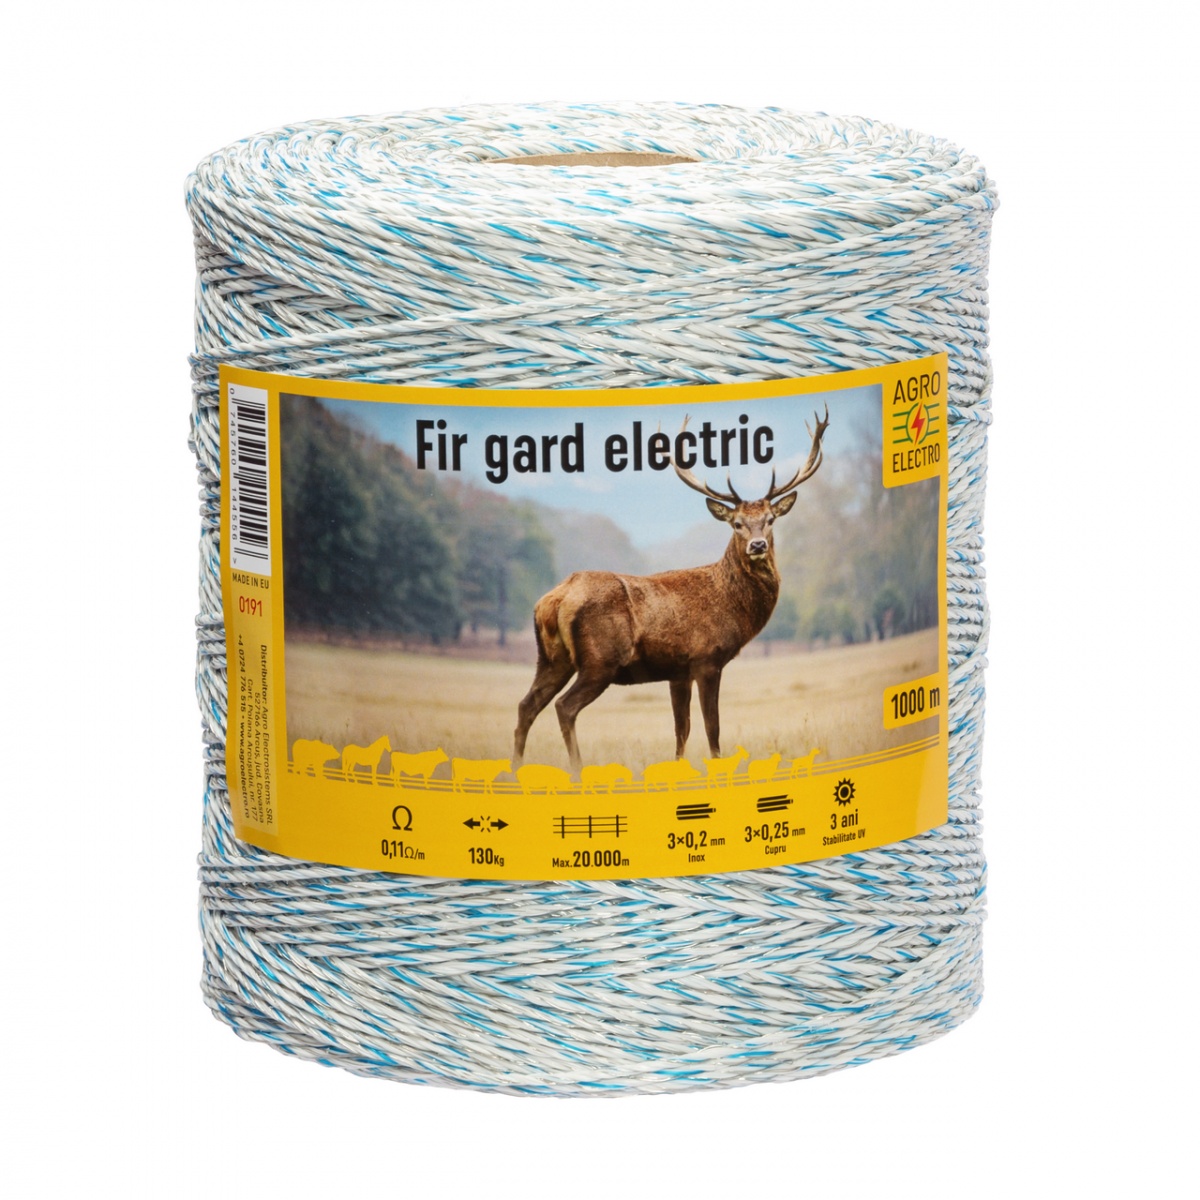 Fir gard electric - 1000 m - 130 kg - 0,11 Ω/m